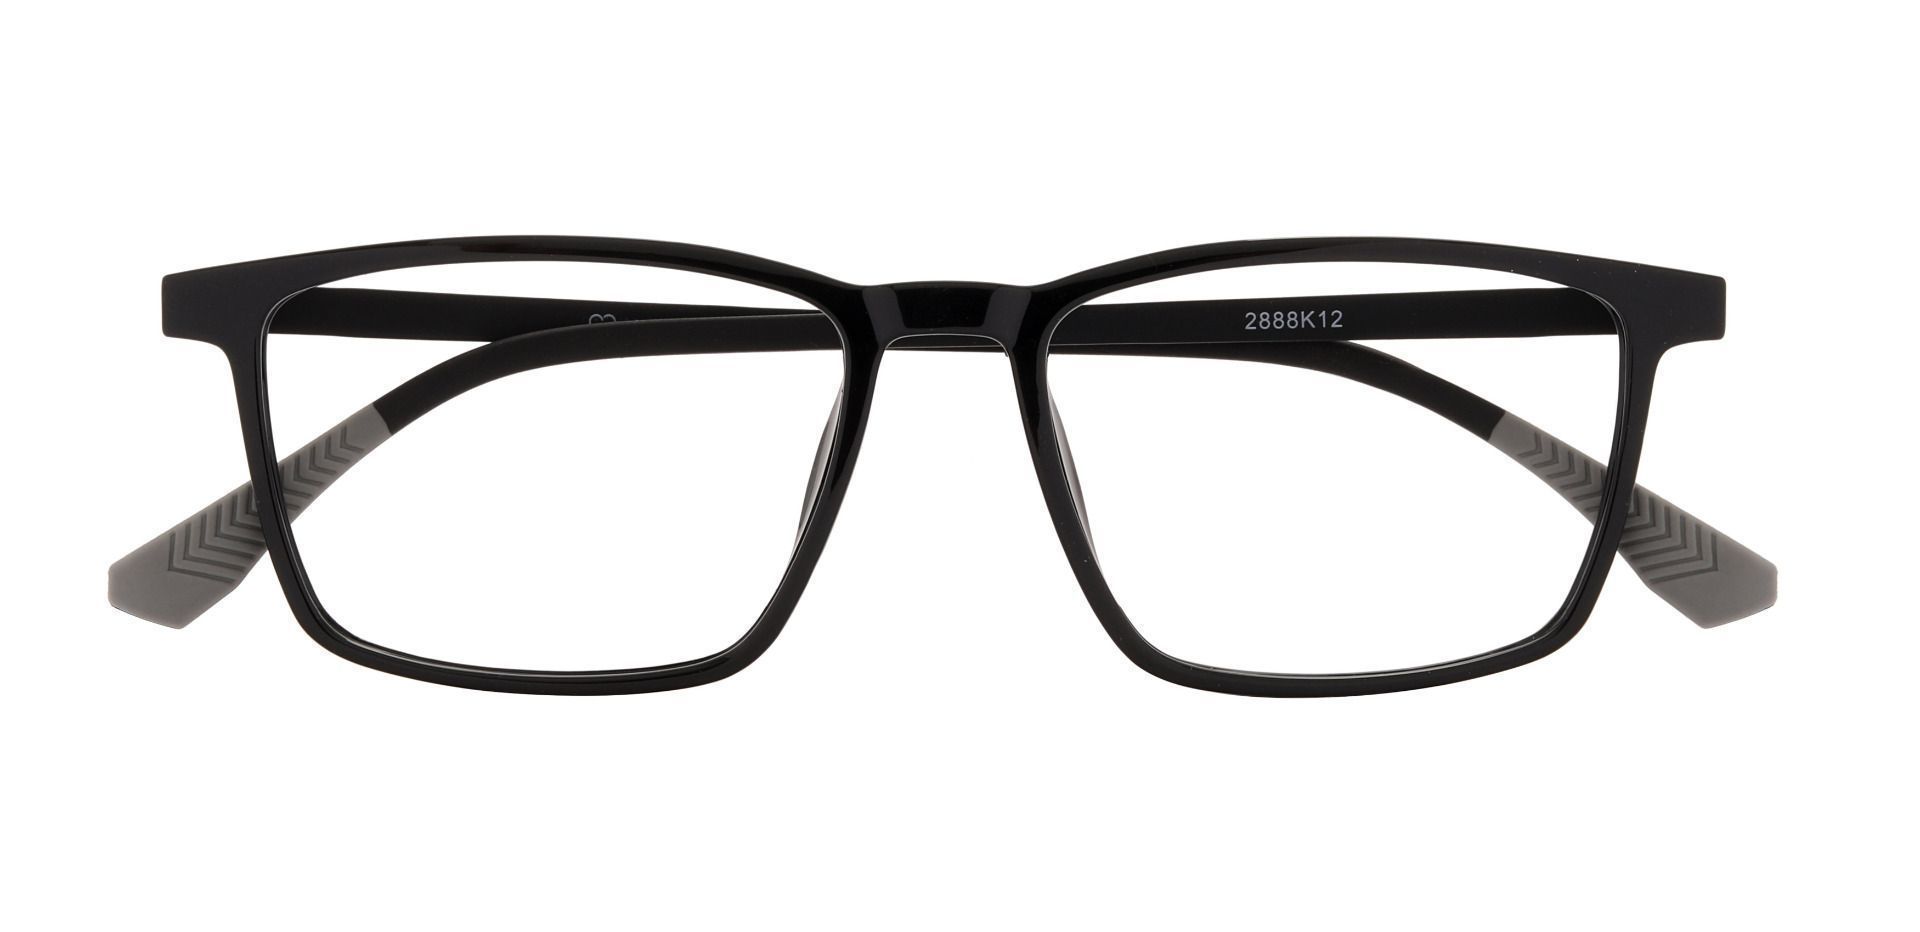 Althea Rectangle Prescription Glasses - Black